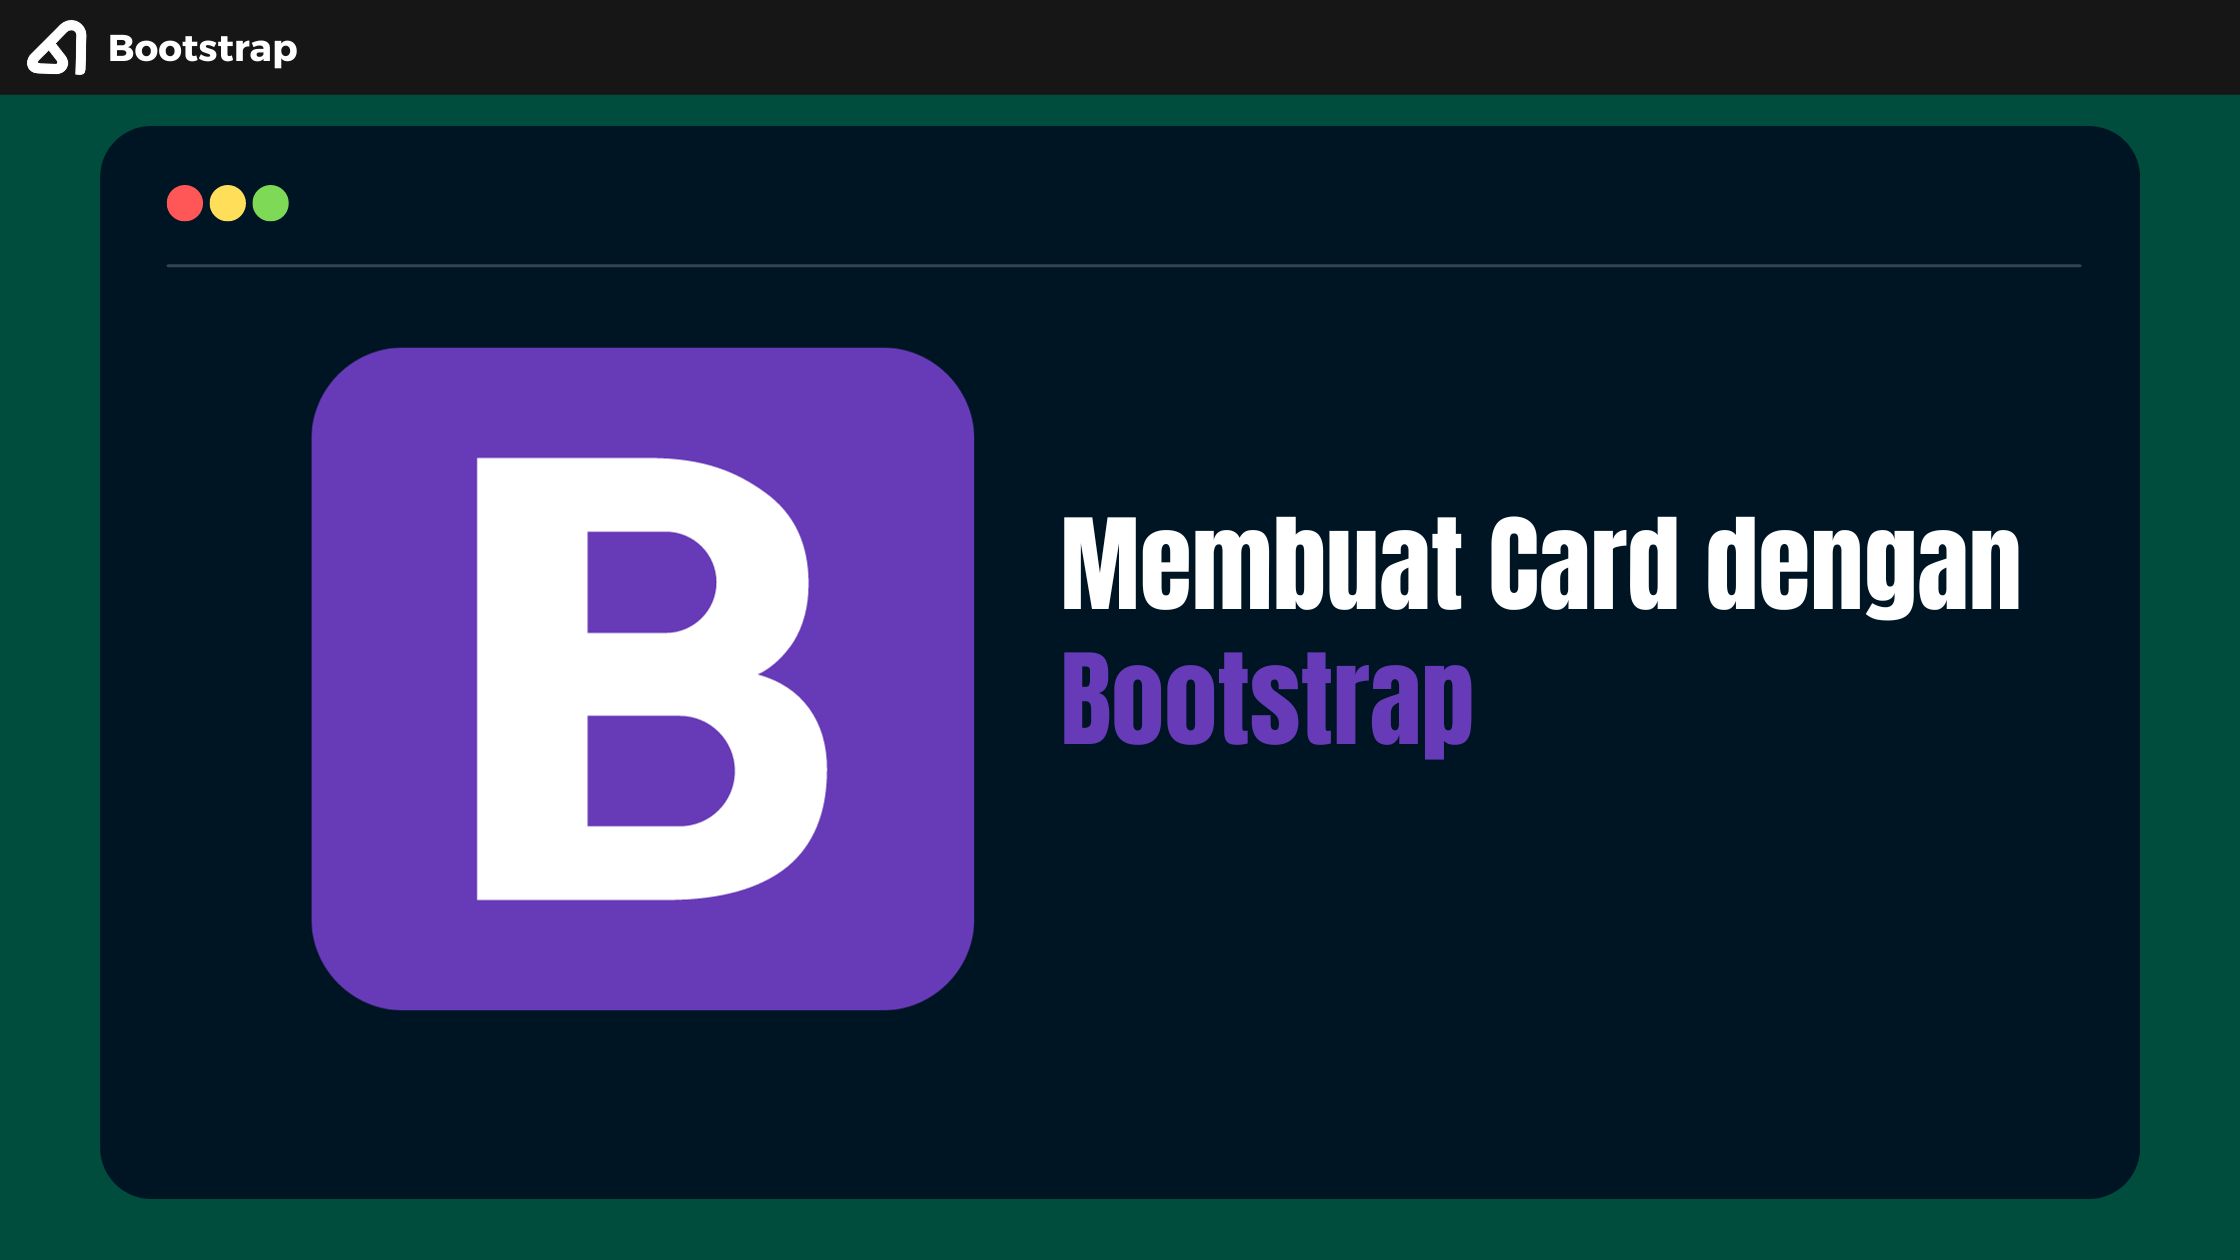 Membuat Card dengan Bootstrap